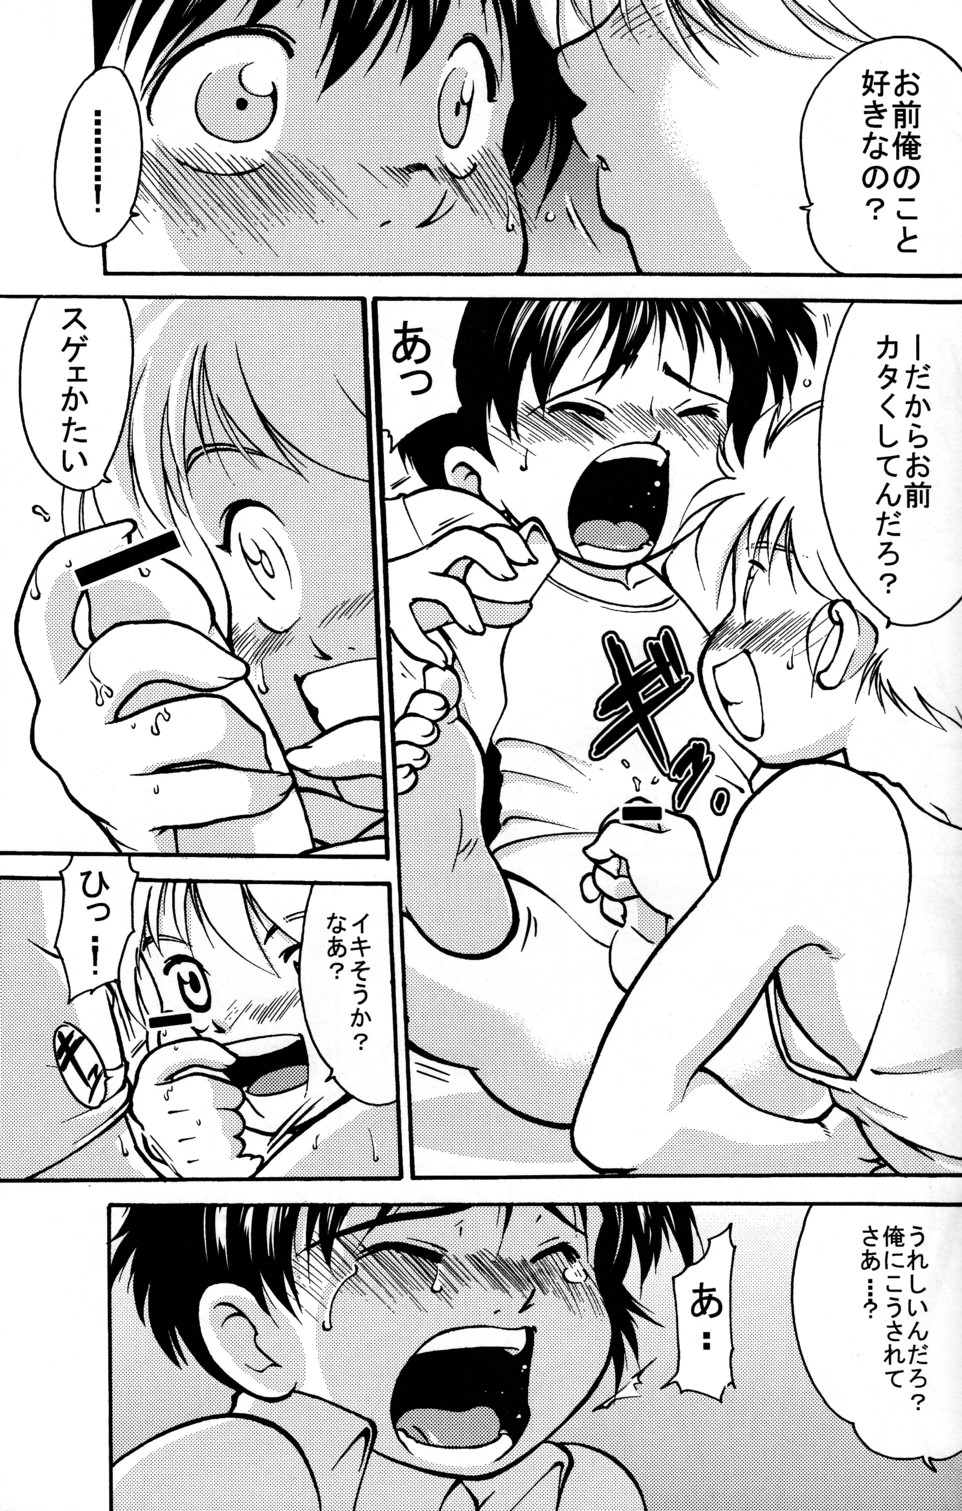 [Yuuji] Boys Life 1 page 9 full